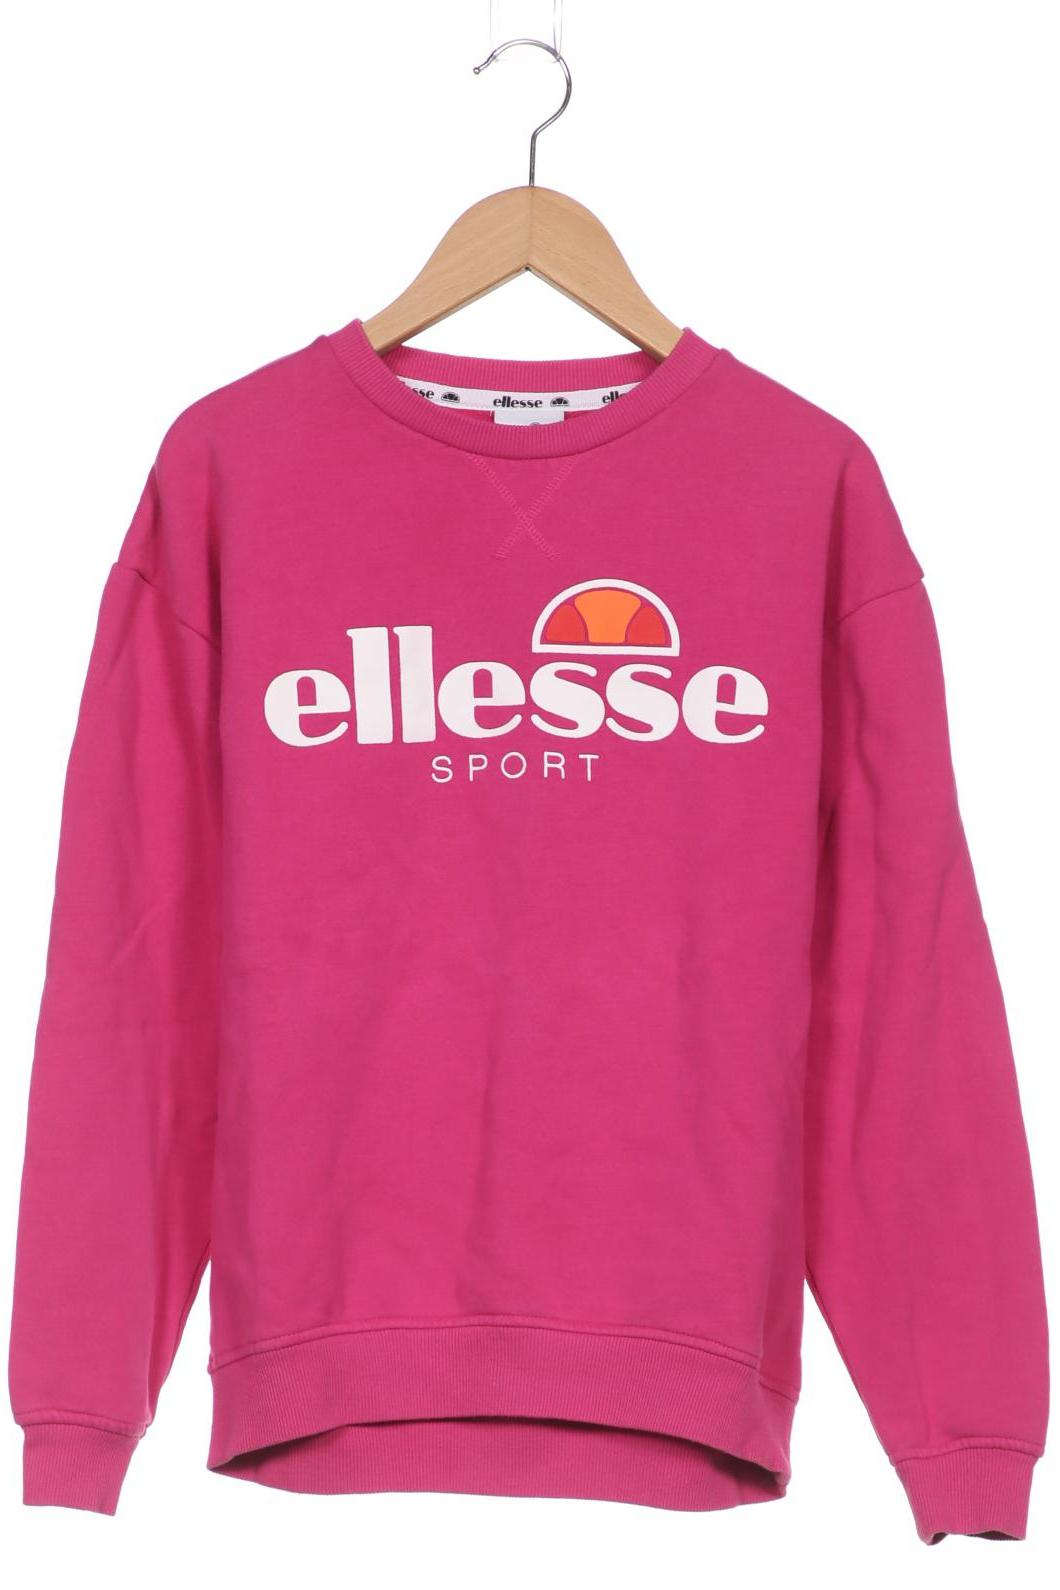 ellesse Damen Sweatshirt, pink, Gr. 36 von Ellesse